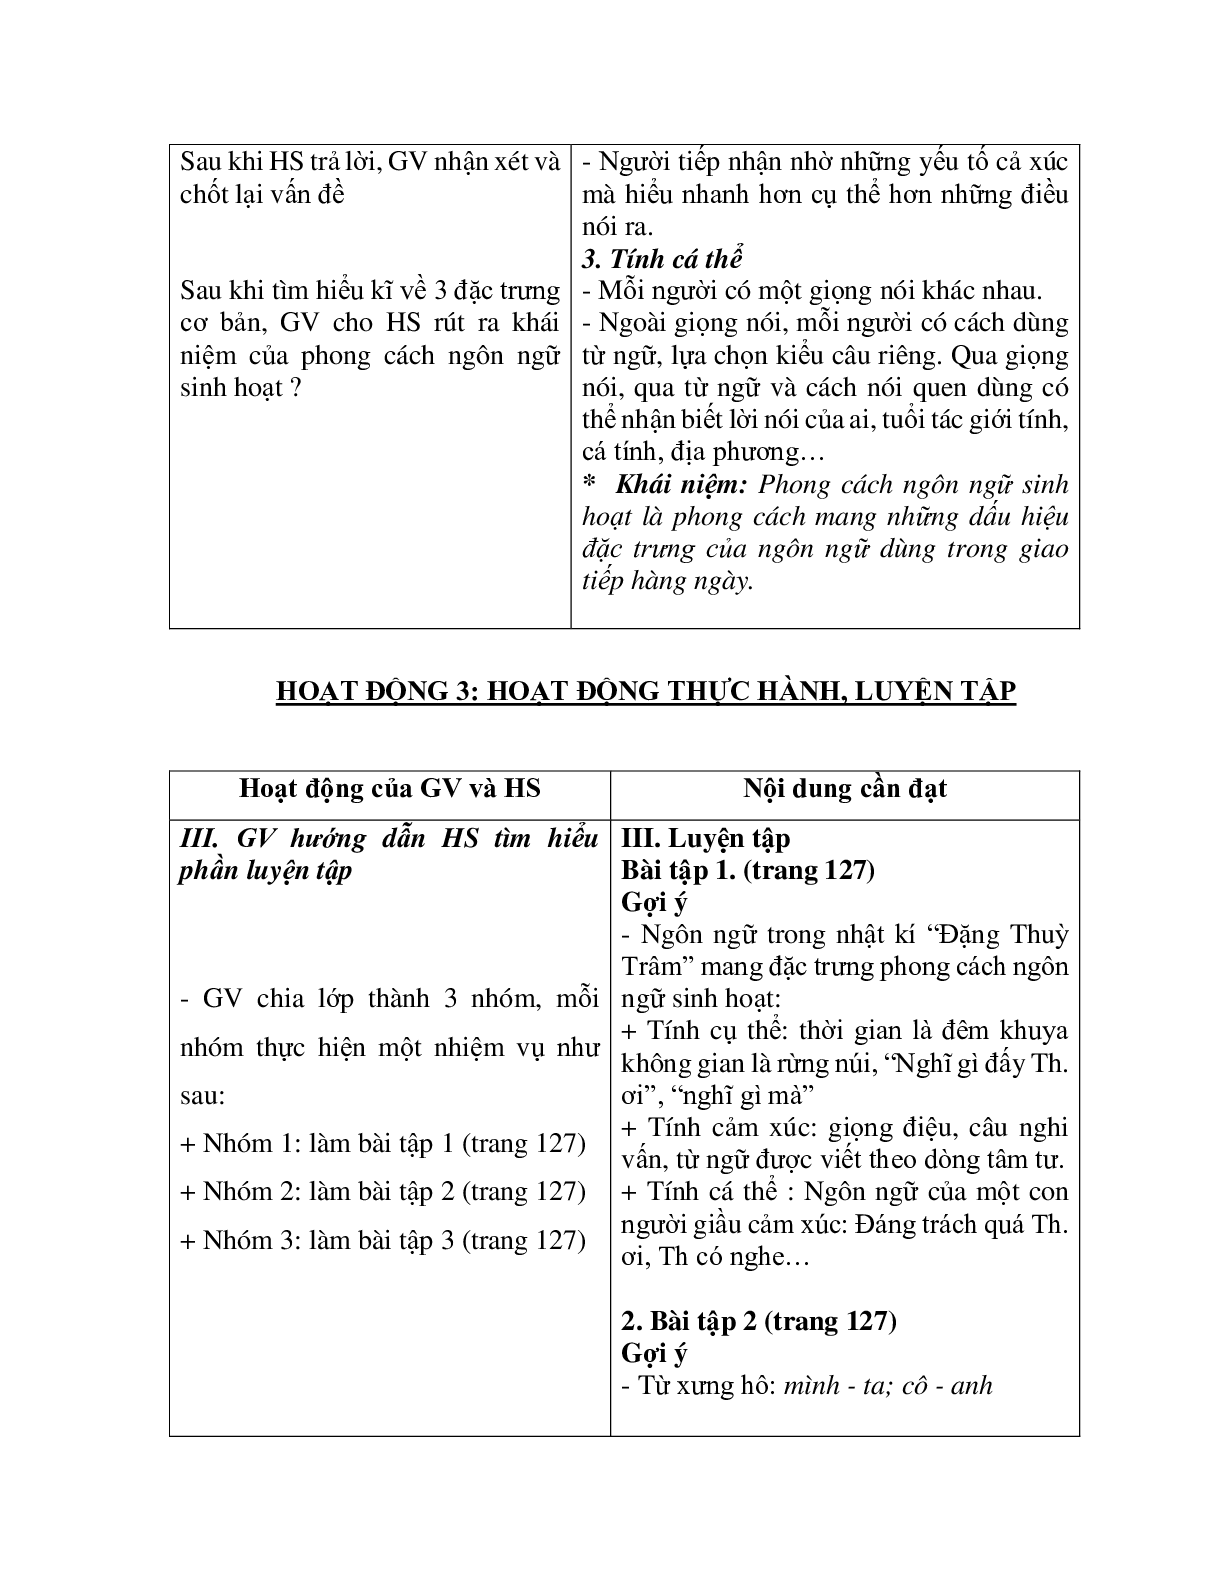 Giáo án ngữ văn lớp 10 Tiết 42, 43: Phong cách ngôn ngữ sinh hoạt (trang 5)